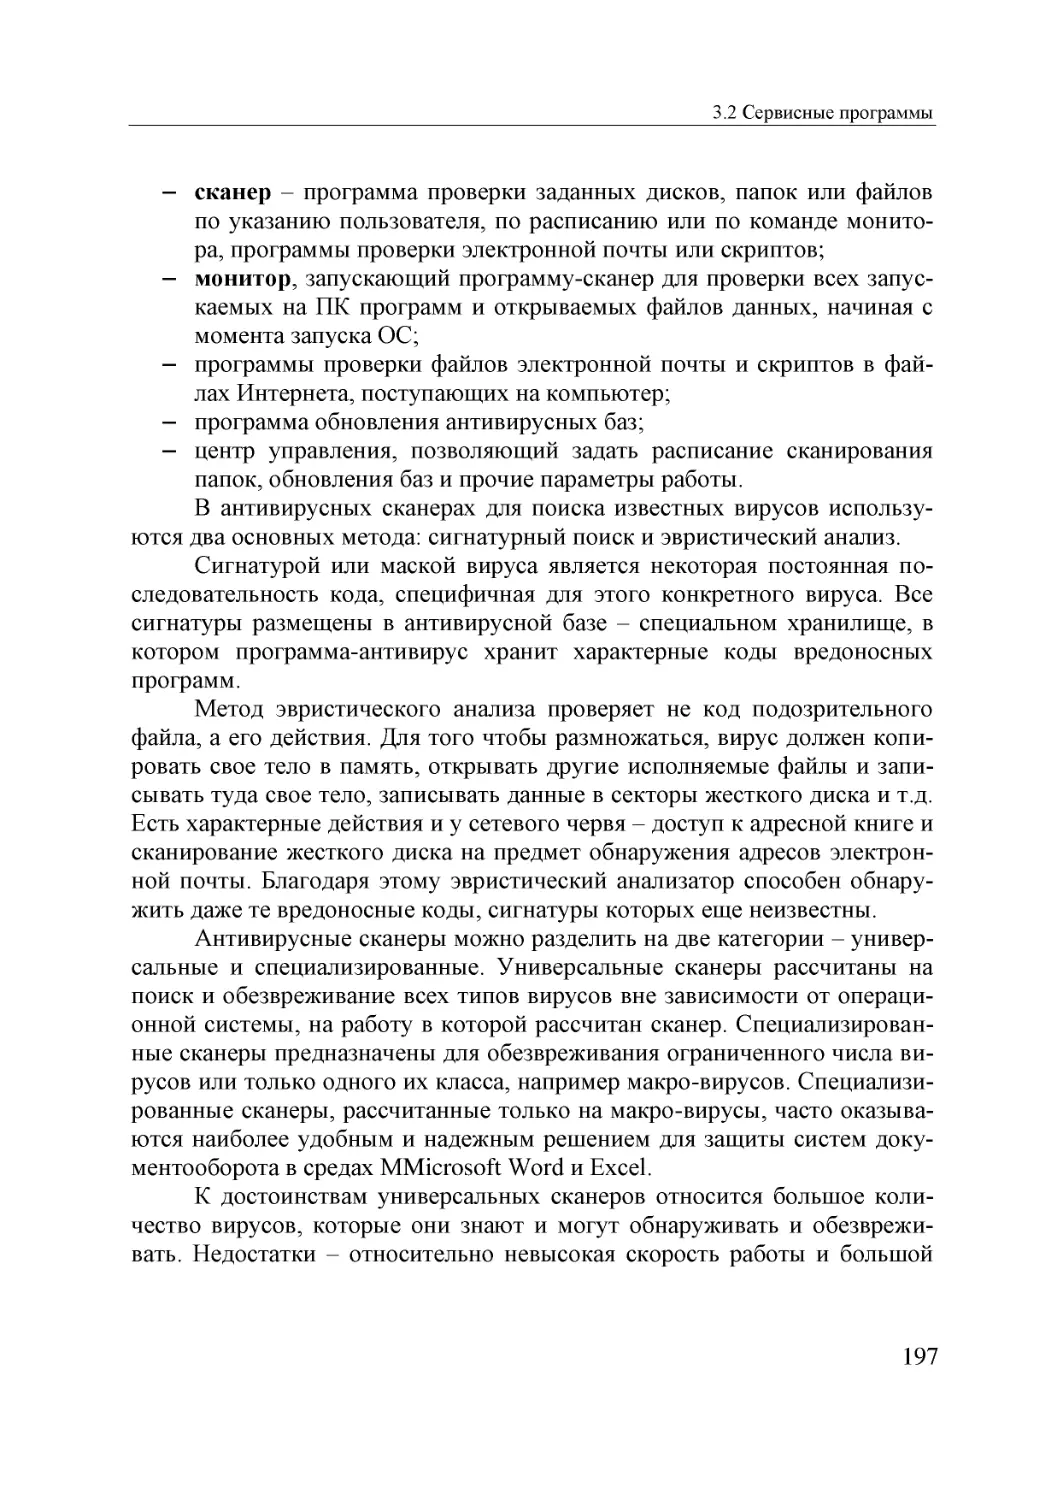 Informatika_Uchebnik_dlya_vuzov_2010 197